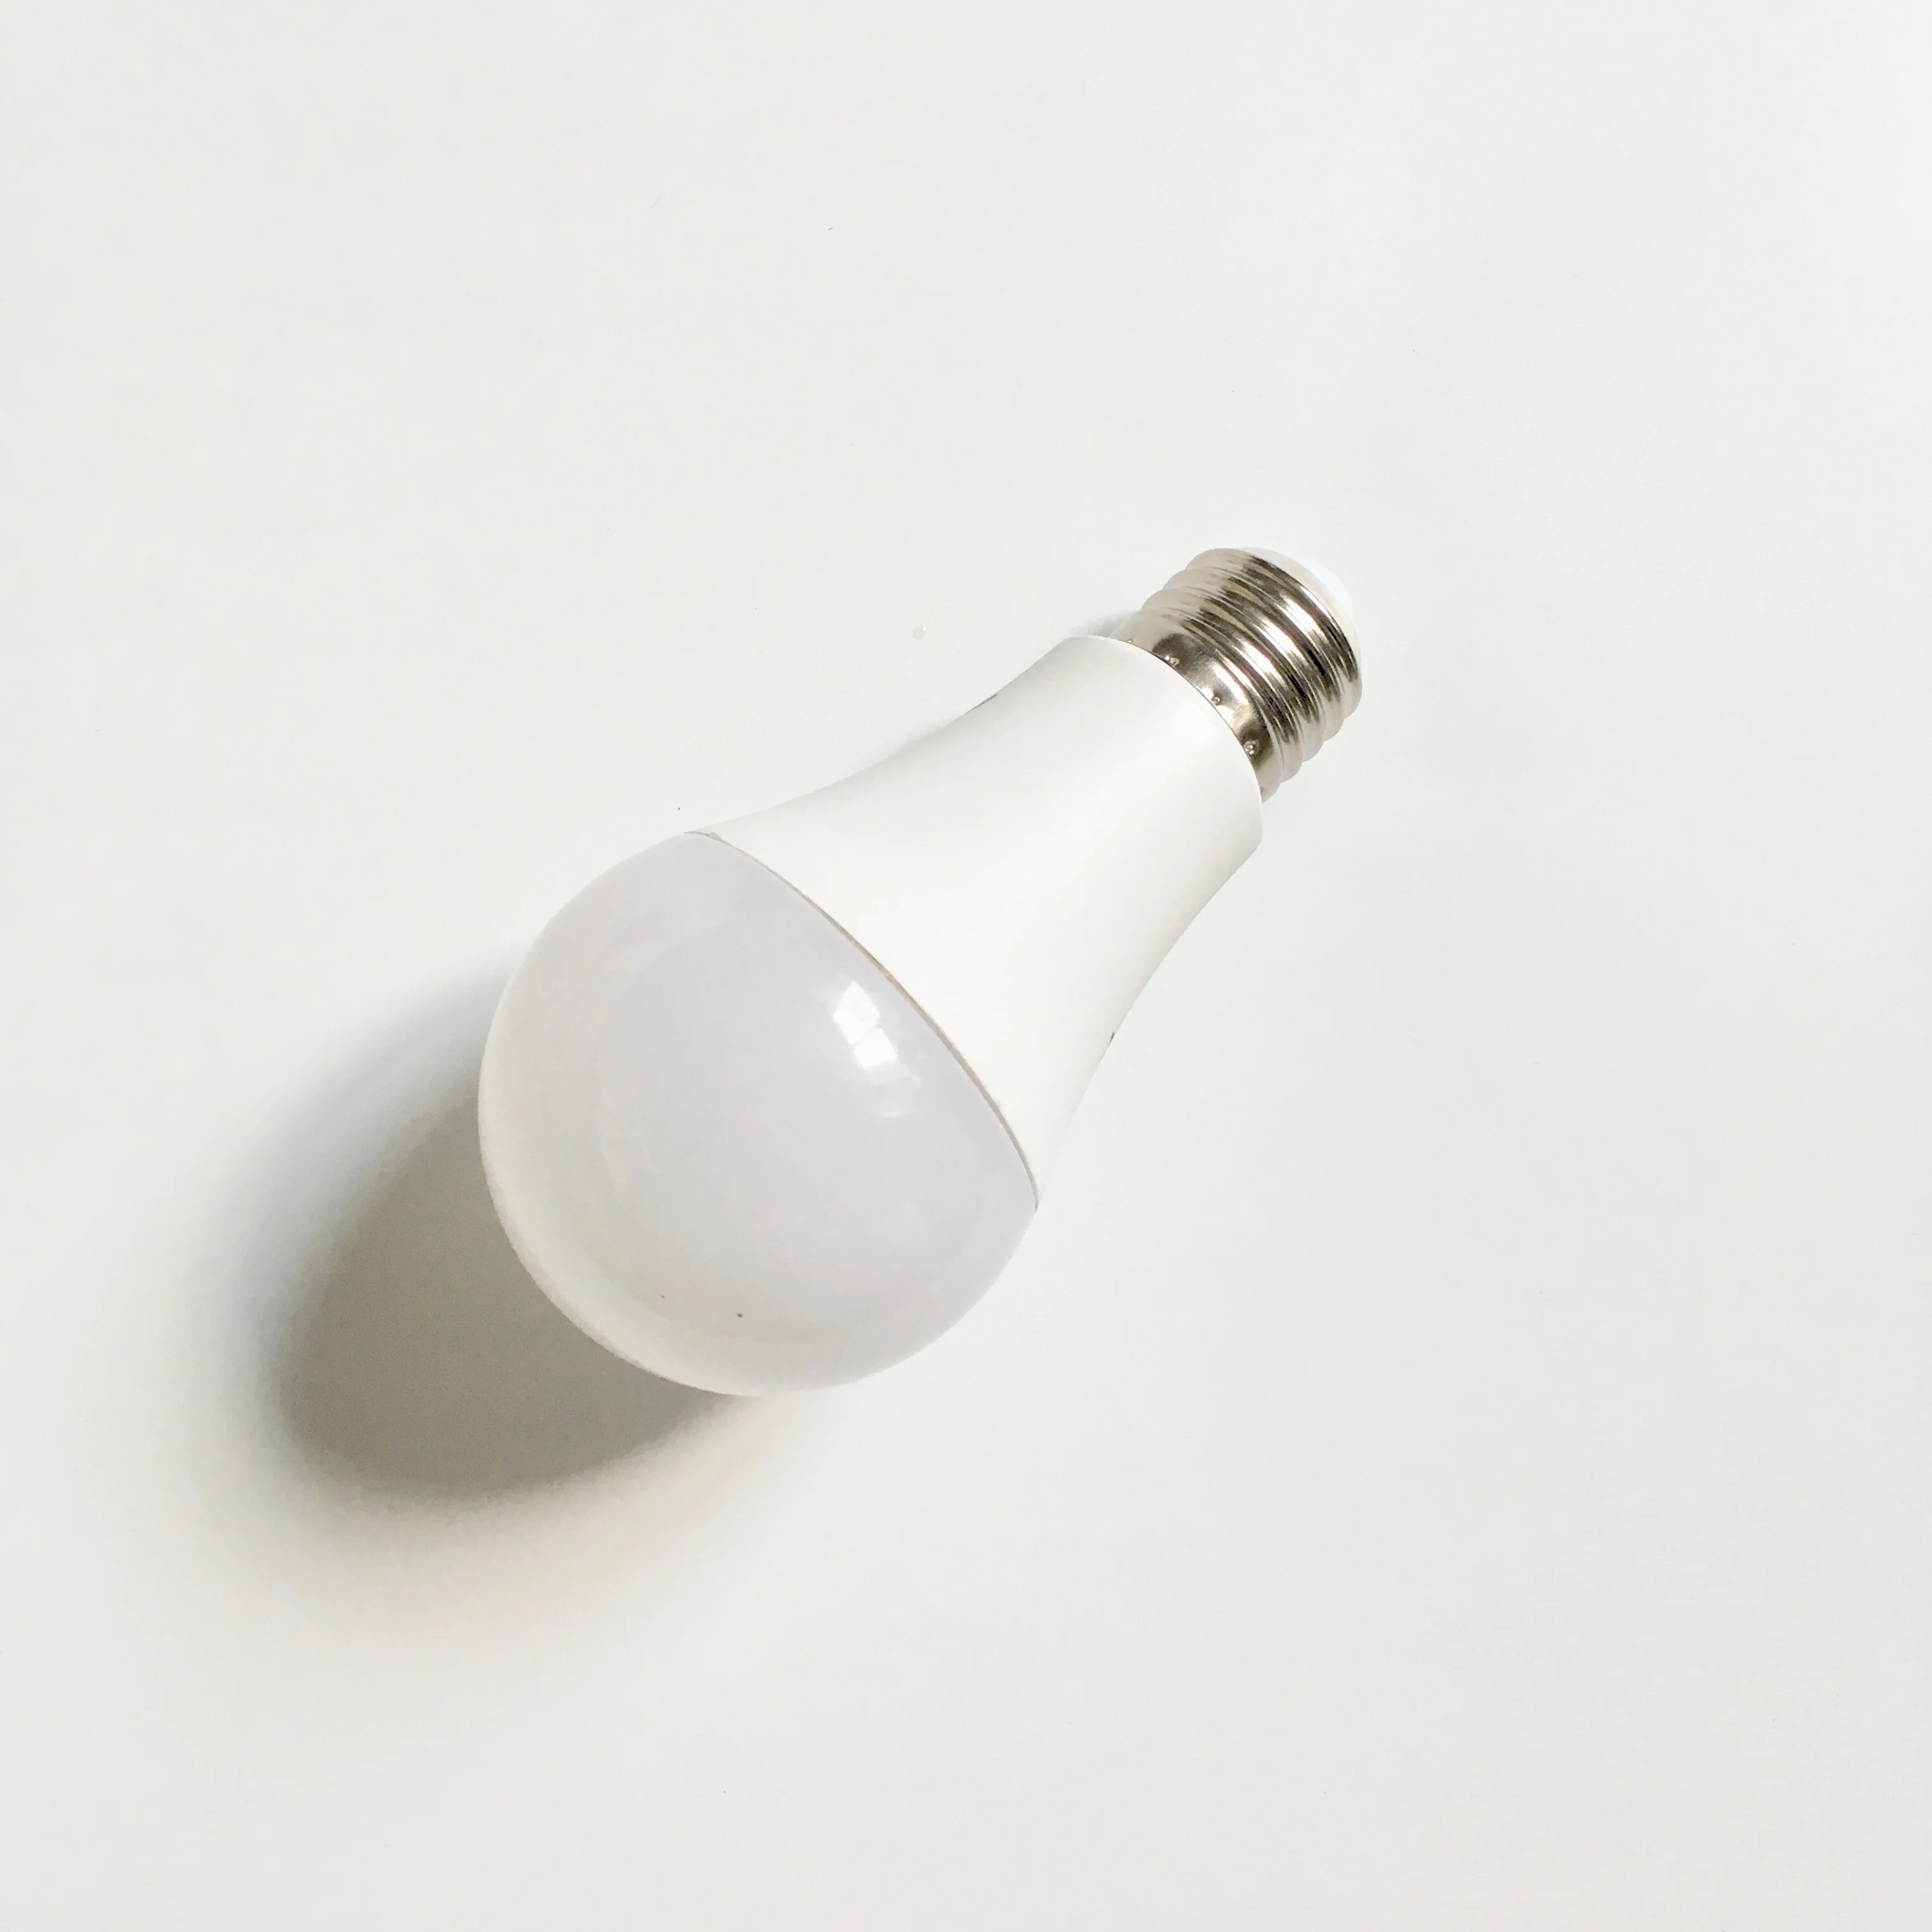 Hangzhou precio bajo de la fábrica A60 7 W luces LED Bombilla de 7 vatios lámpara de bombilla LED con garantía